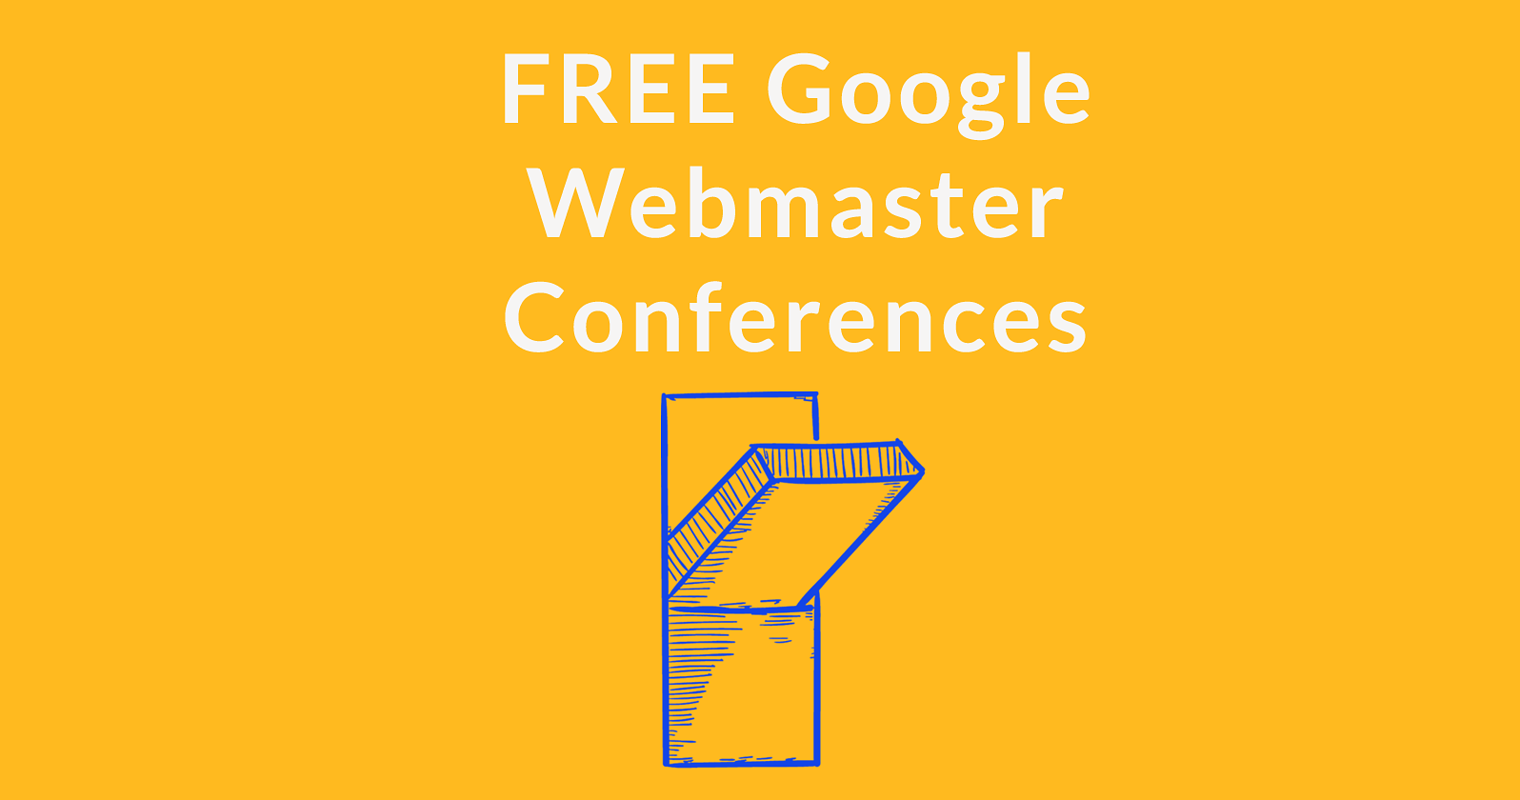 Google Announces Free Webmaster Conferences